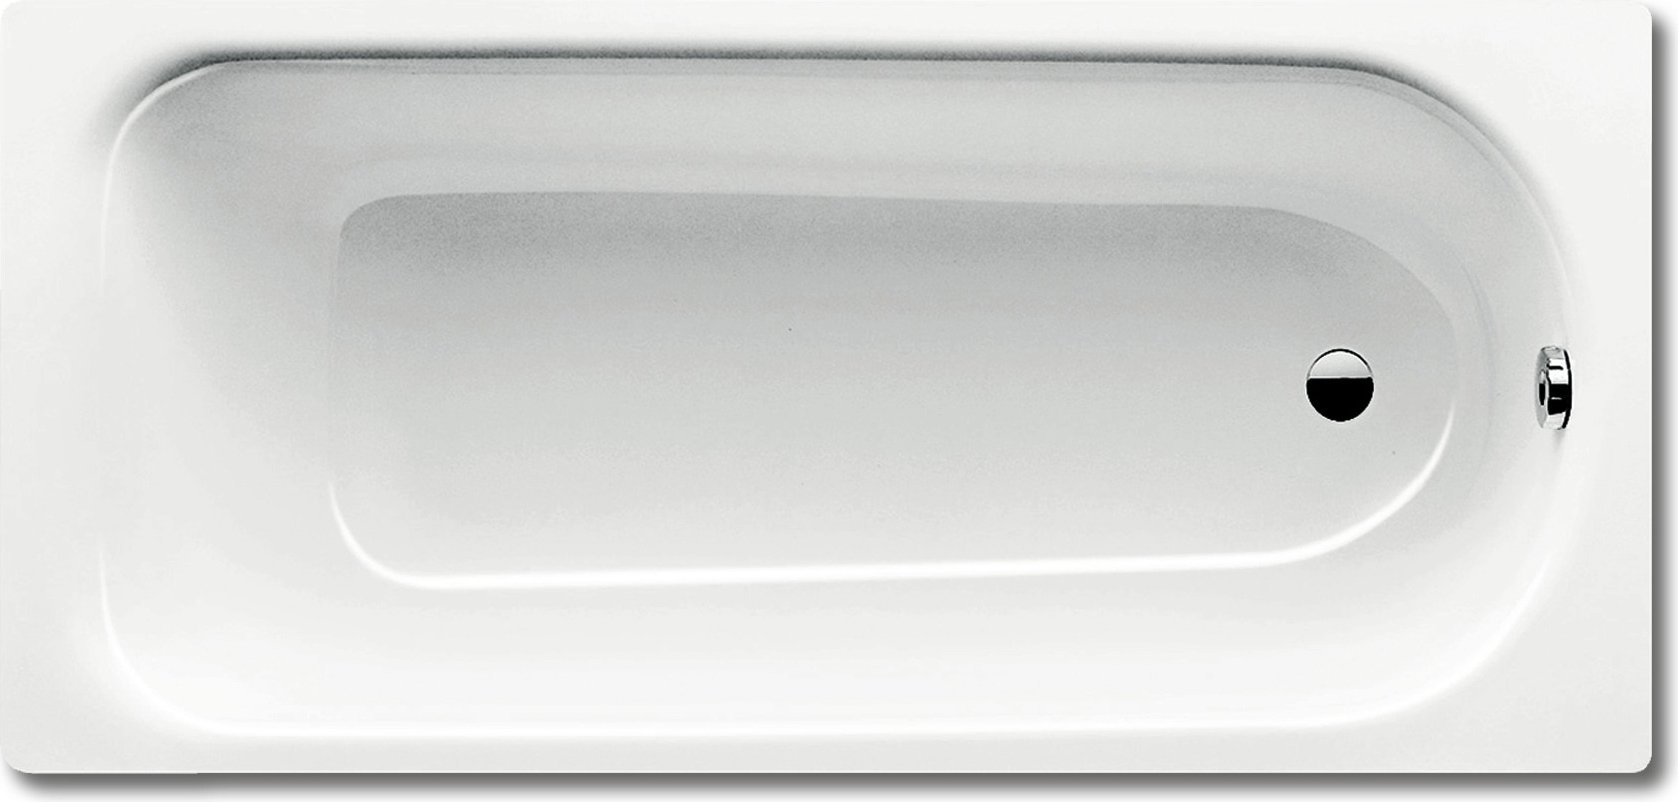 Стальная ванна Kaldewei Advantage Saniform Plus 375-1 180x80, белый, сталь  - купить со скидкой